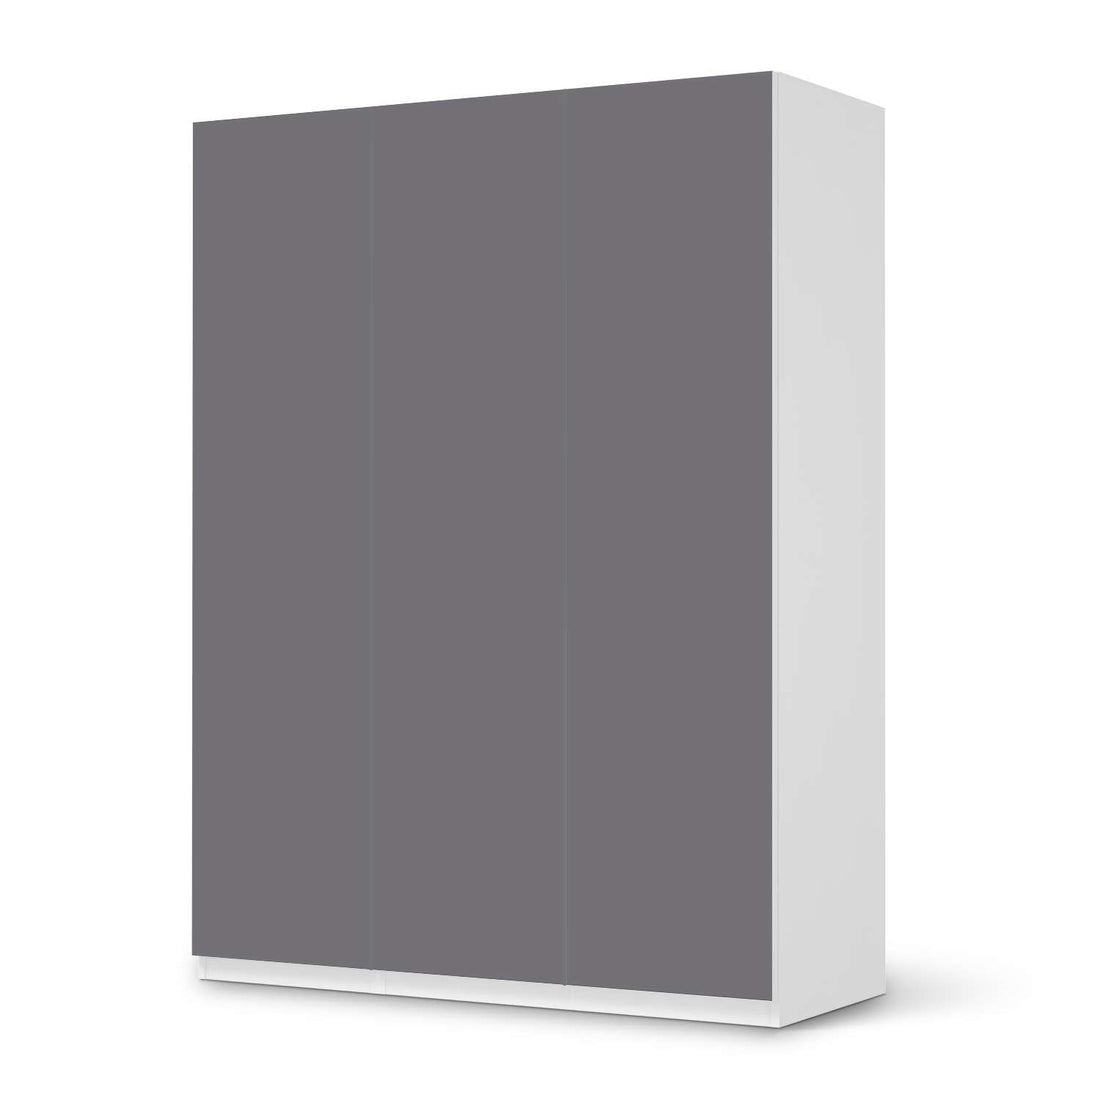 Folie für Möbel Grau Light - IKEA Pax Schrank 201 cm Höhe - 3 Türen - weiss